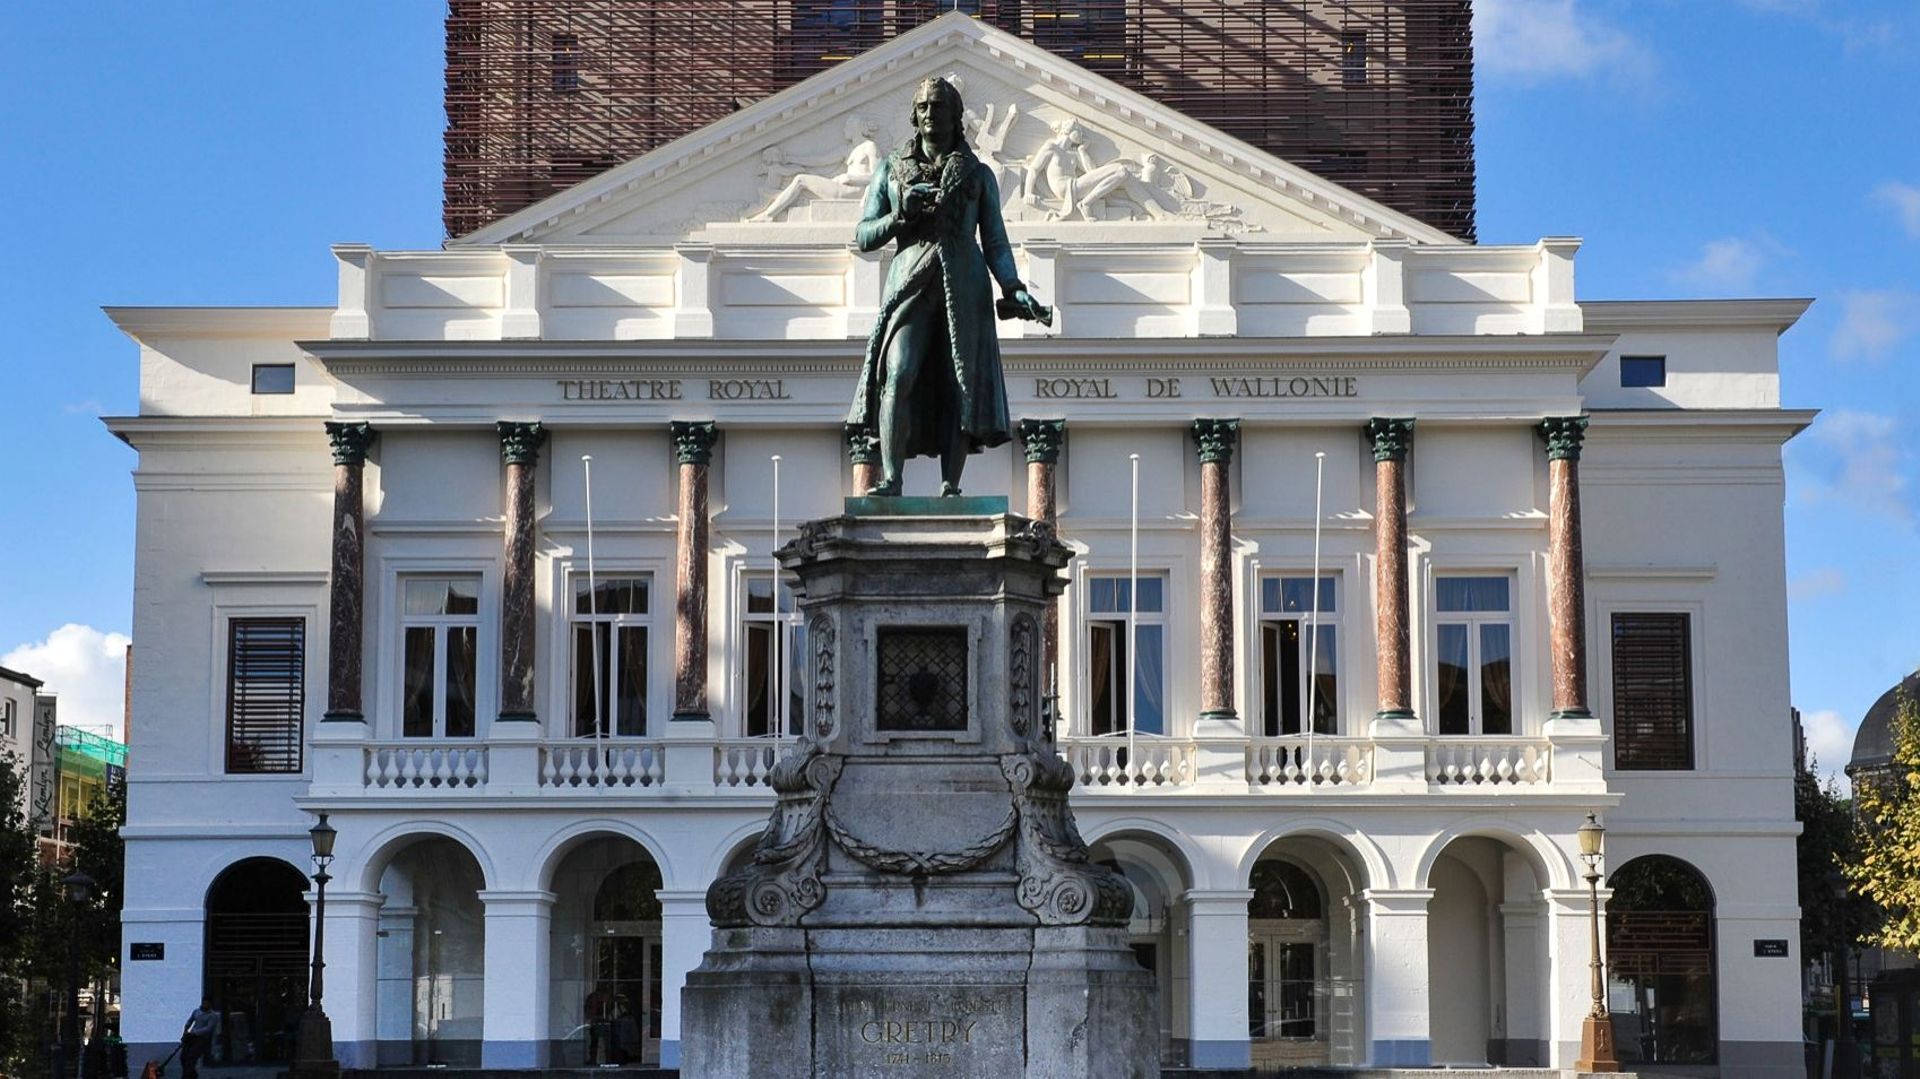 La statue de Grétry face à l'Opéra royal de Wallonie